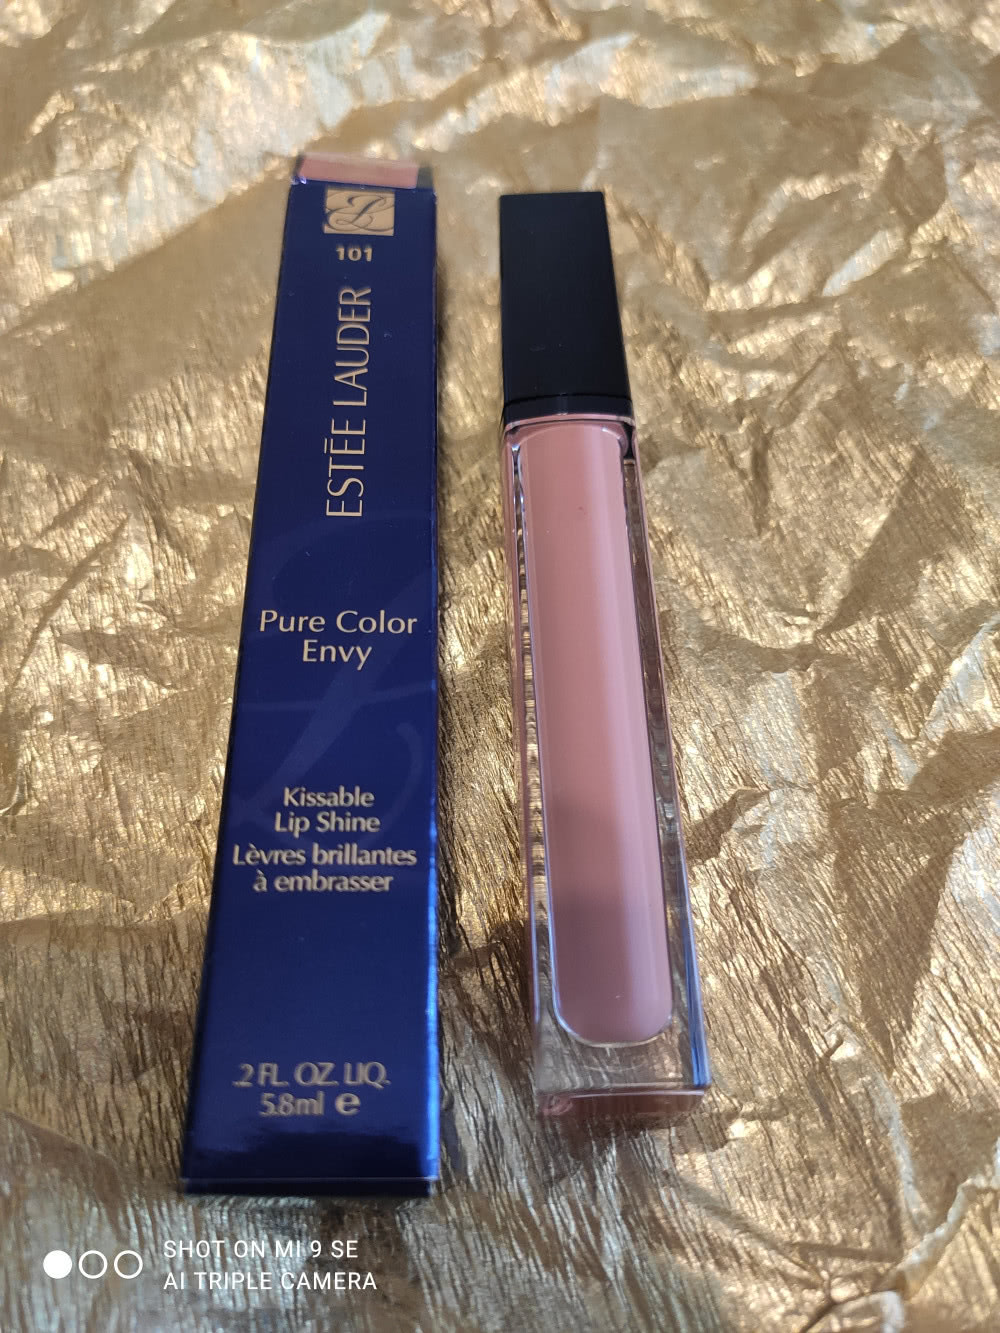 Продам блеск для губ Estee Lauder Pure Color Envy Kissable Lip Shine в оттенке Bronze Idol